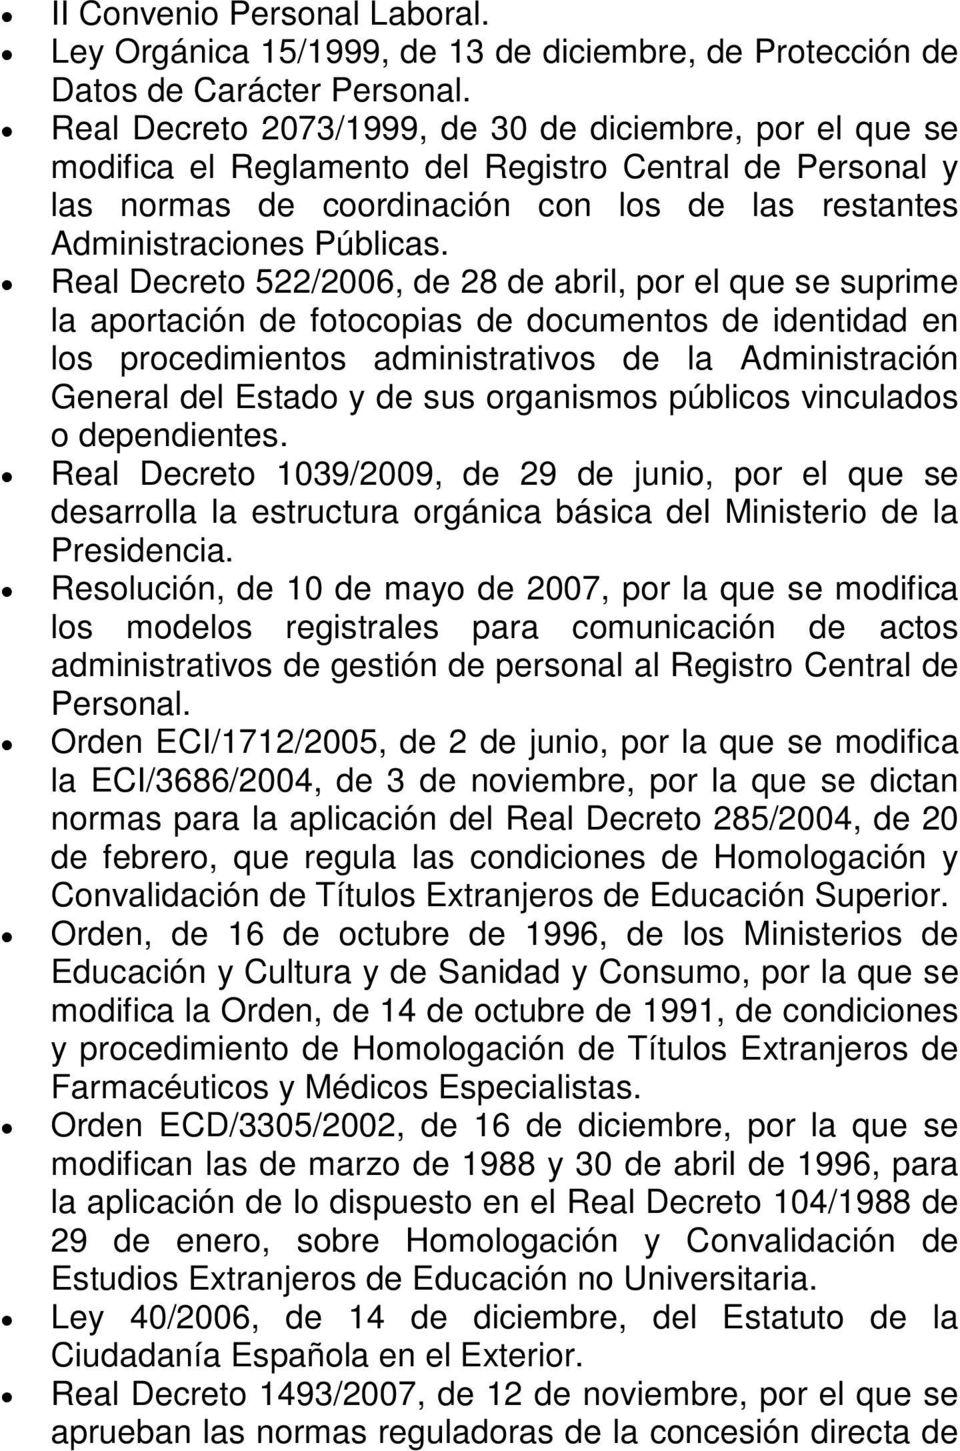 Real Decreto 522/2006, de 28 de abril, por el que se suprime la aportación de fotocopias de documentos de identidad en los procedimientos administrativos de la Administración General del Estado y de